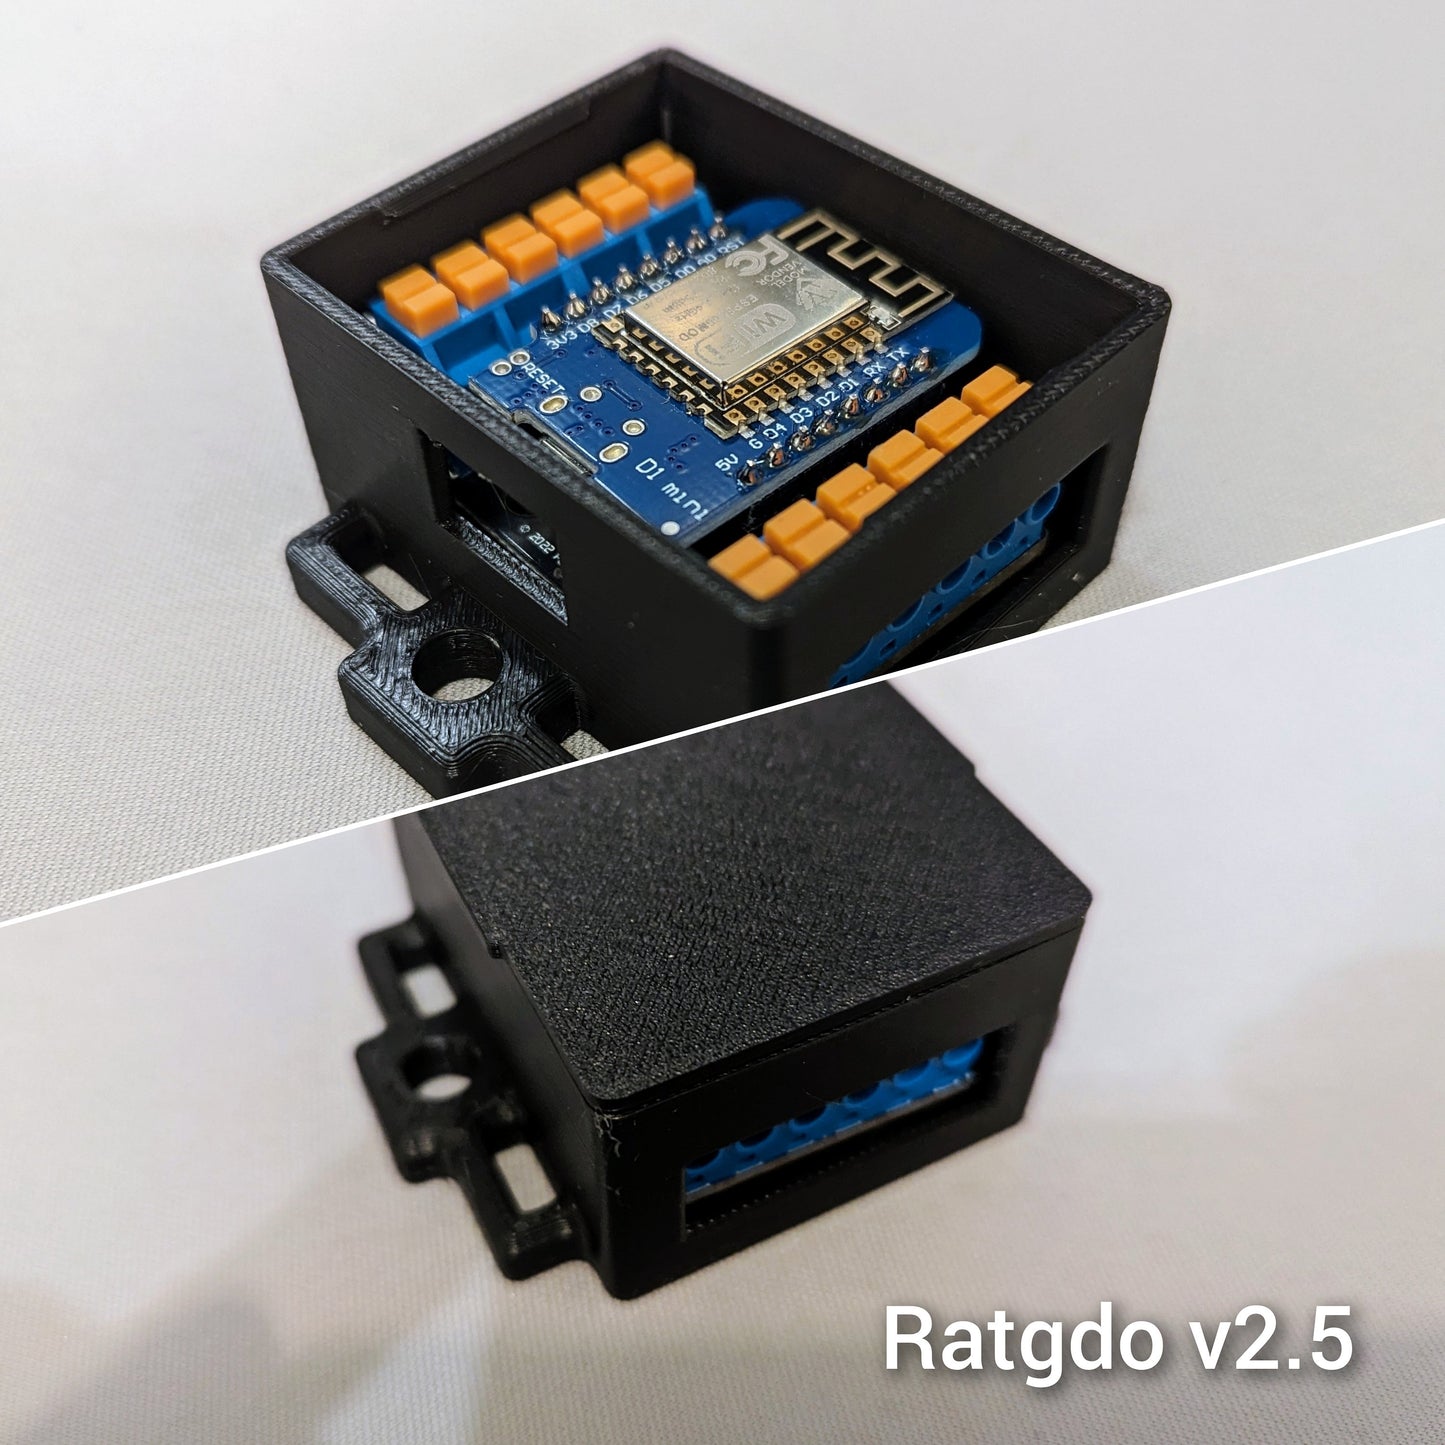 Ratgdo PCB Case Tooless Enclosure - Ratgdo Case for MyQ Alternative Esphome/Mqtt Board